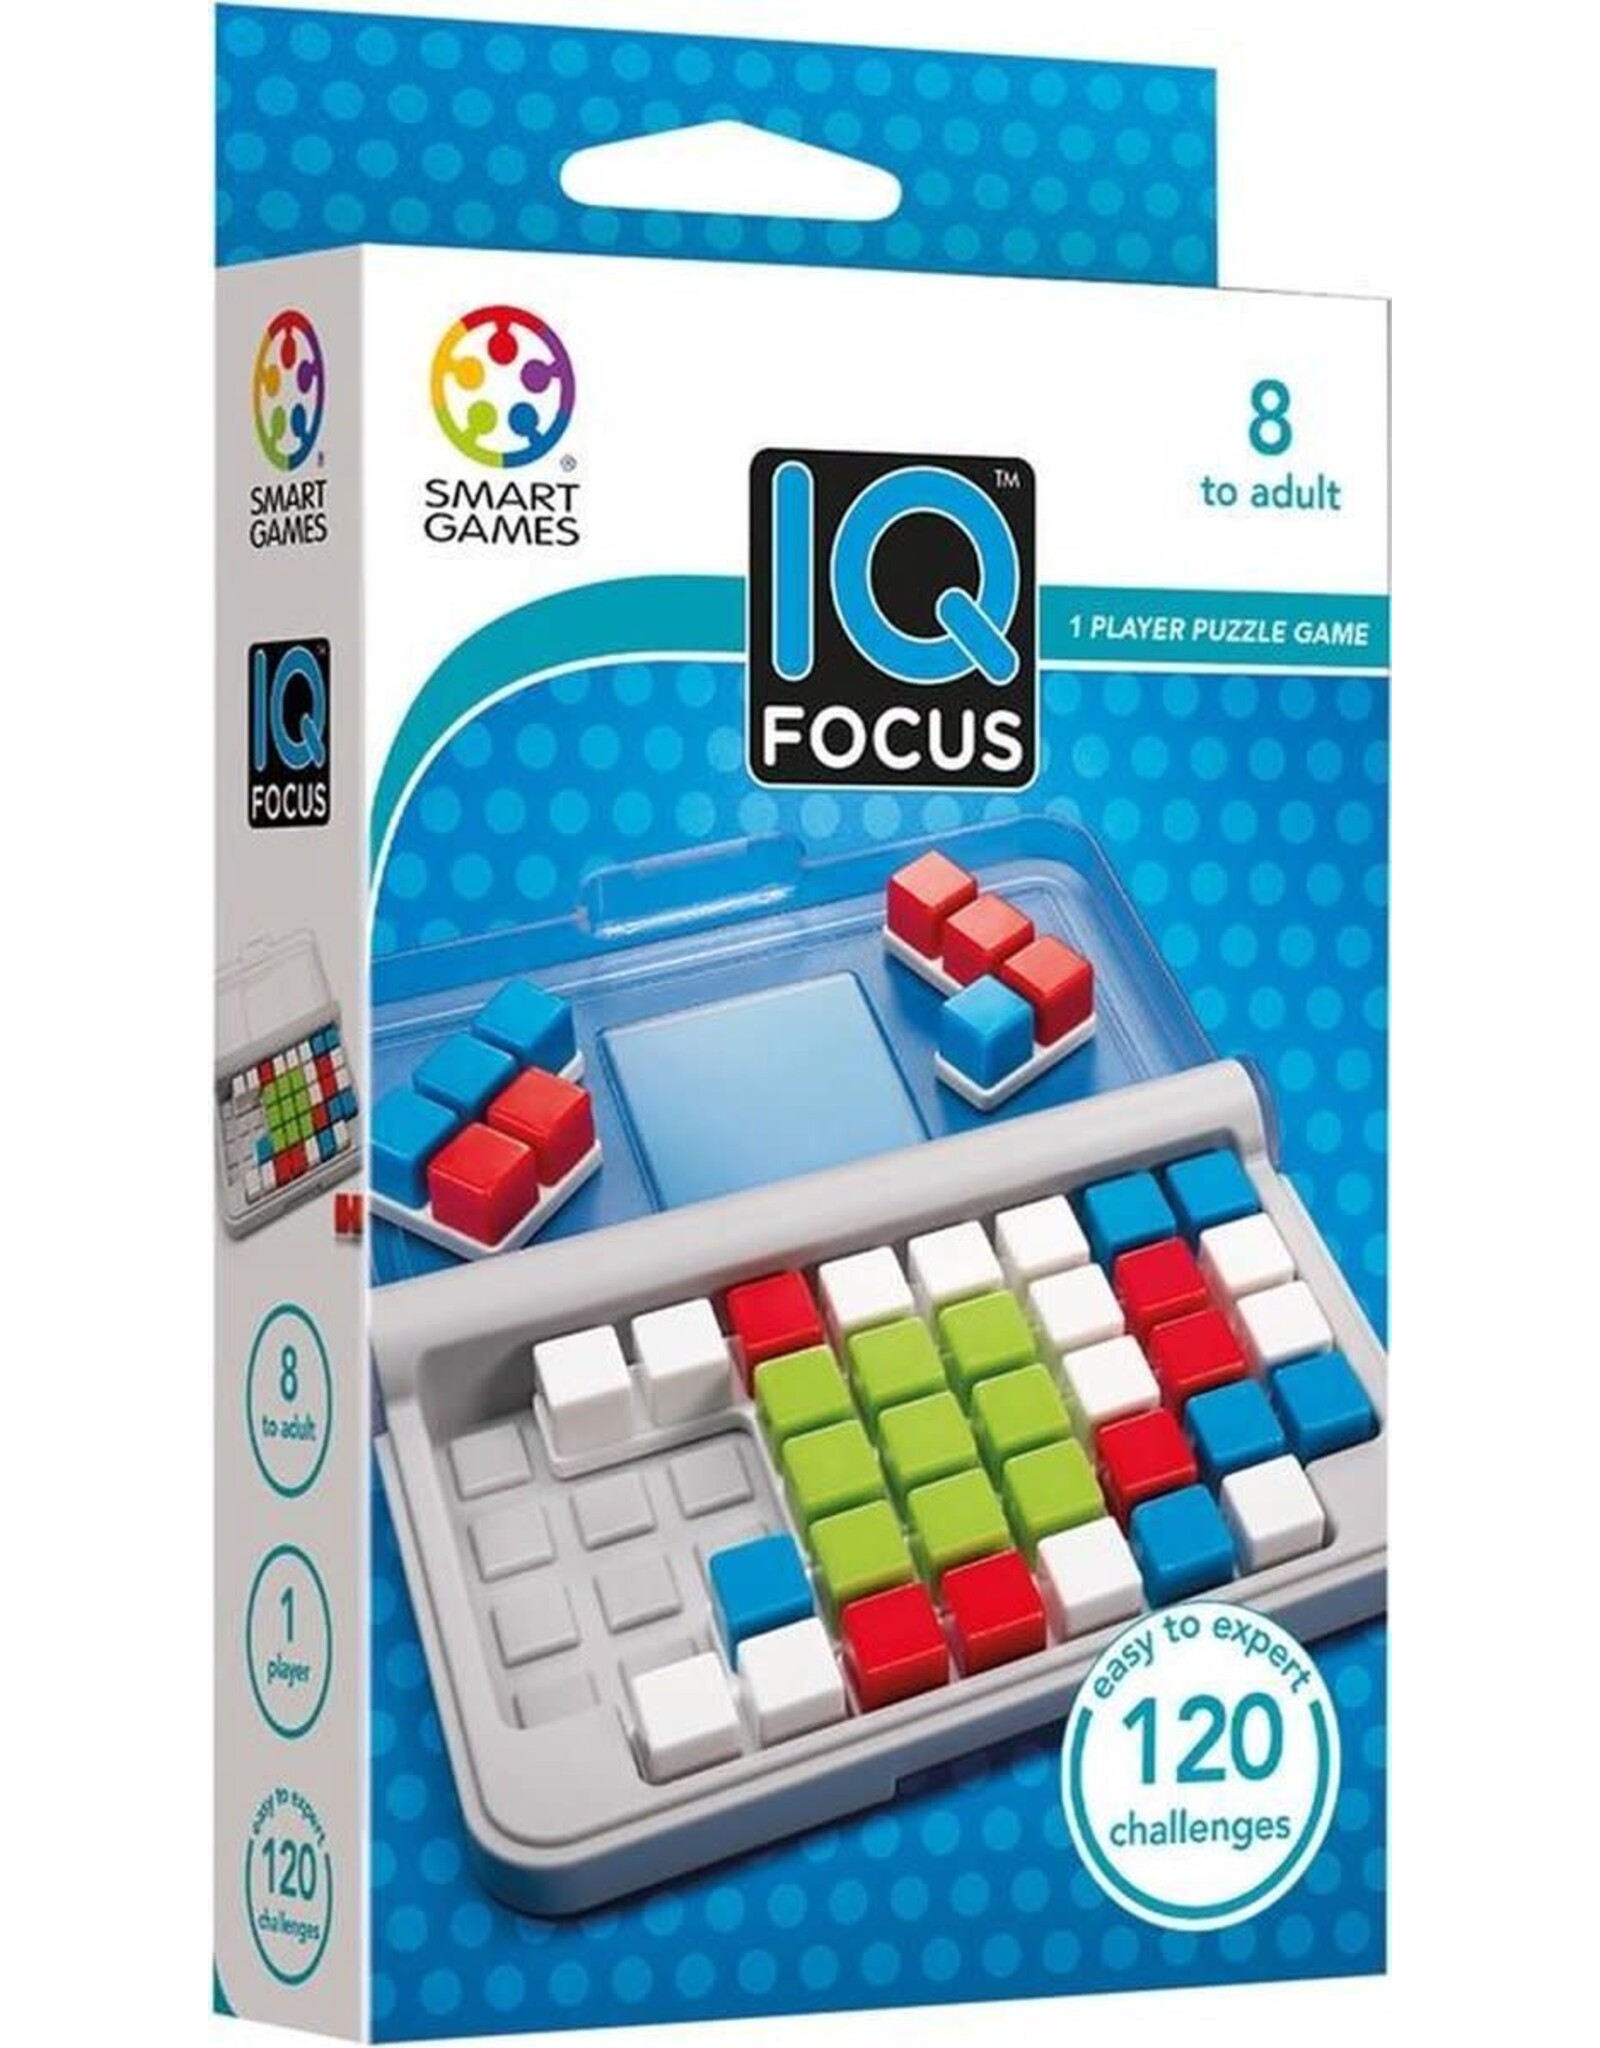 SmartGames Smart Games IQ Pocket Games - IQ Focus